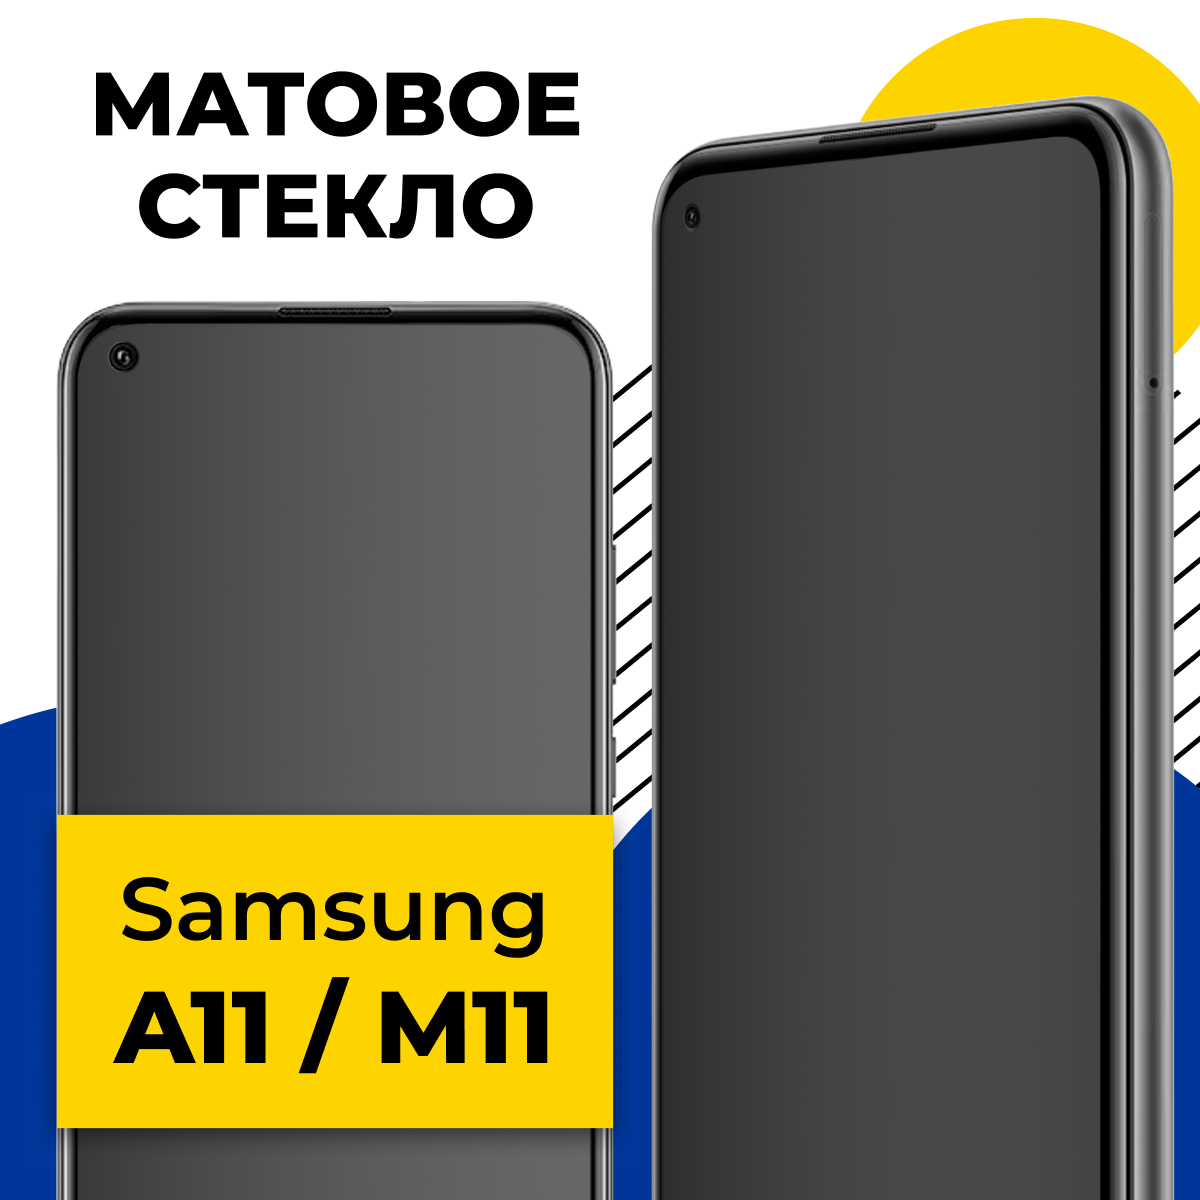 Матовое защитное стекло для телефона Samsung Galaxy A11 и M11 / Противоударное стекло 2.5D на смартфон Самсунг Галакси А11, М11 с олеофобным покрытием